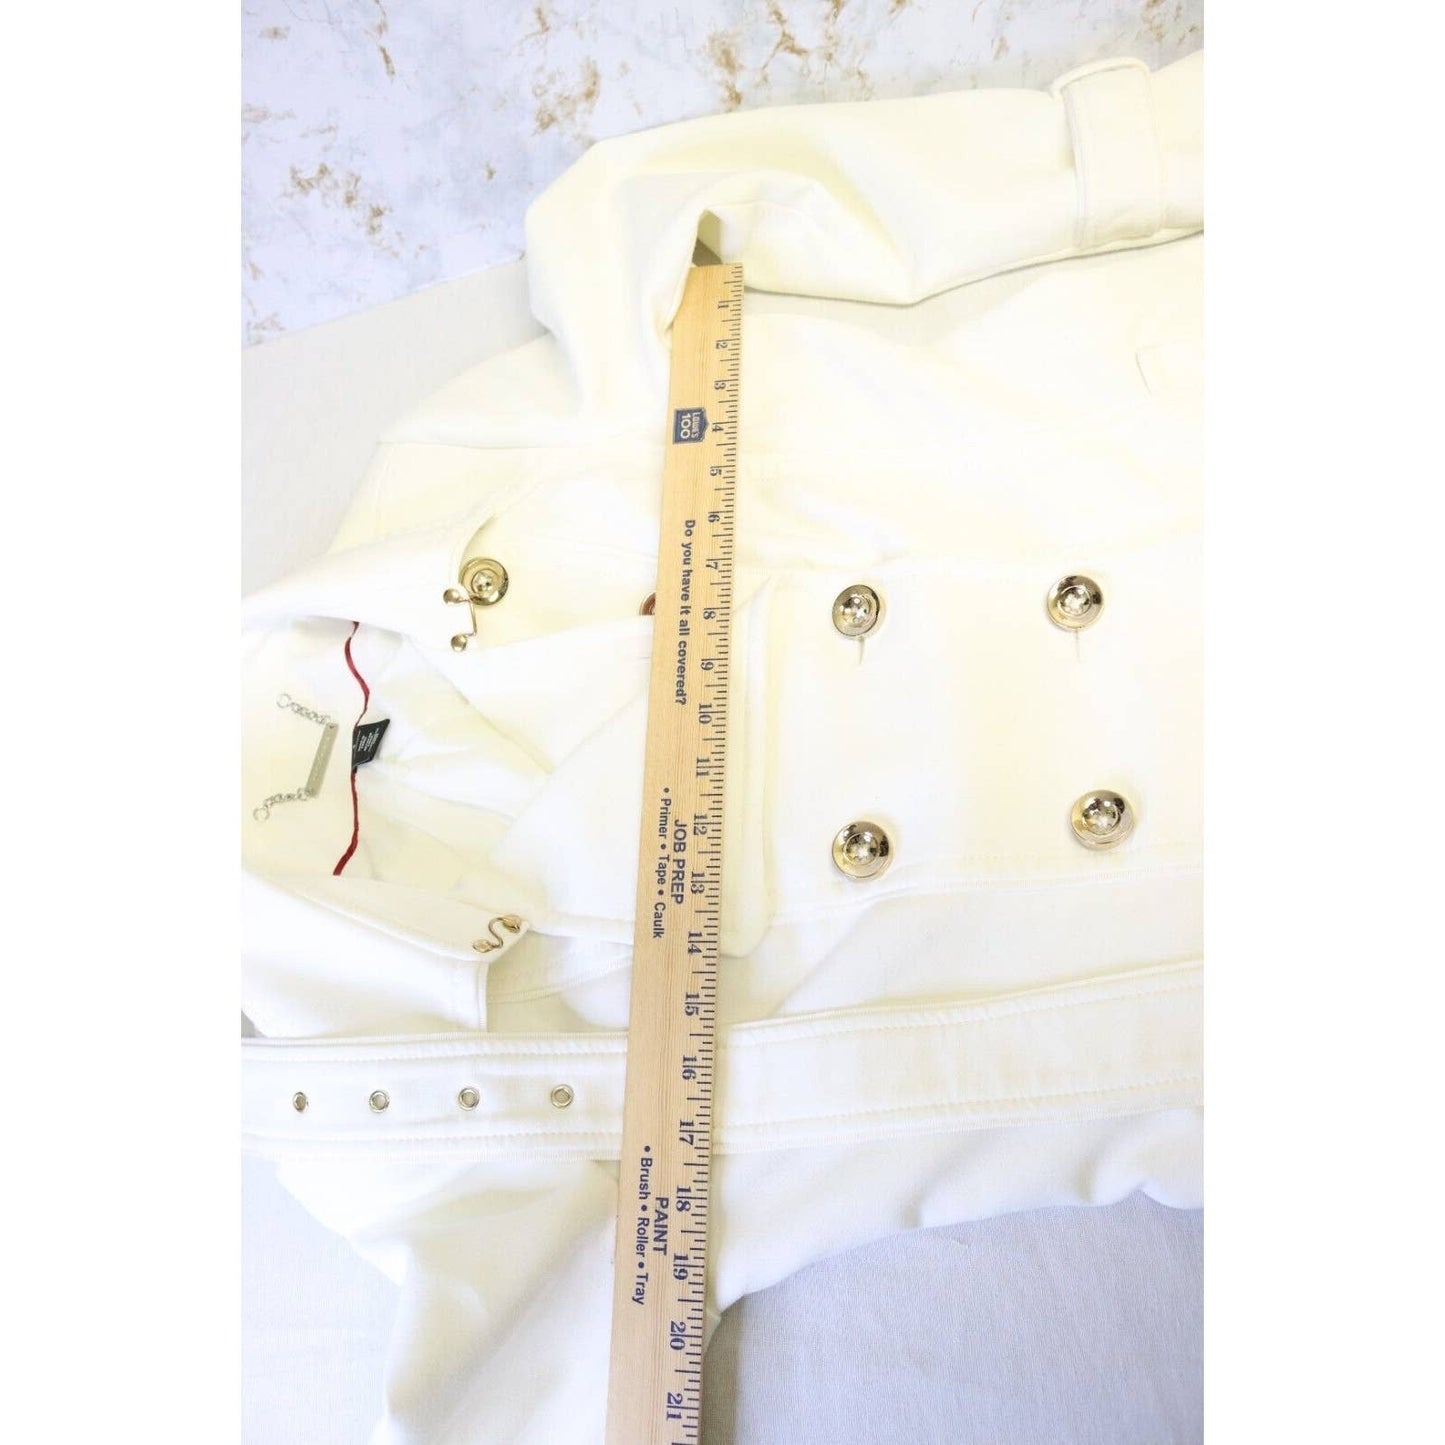 White house black market white jacket size Medium peacoat (K)